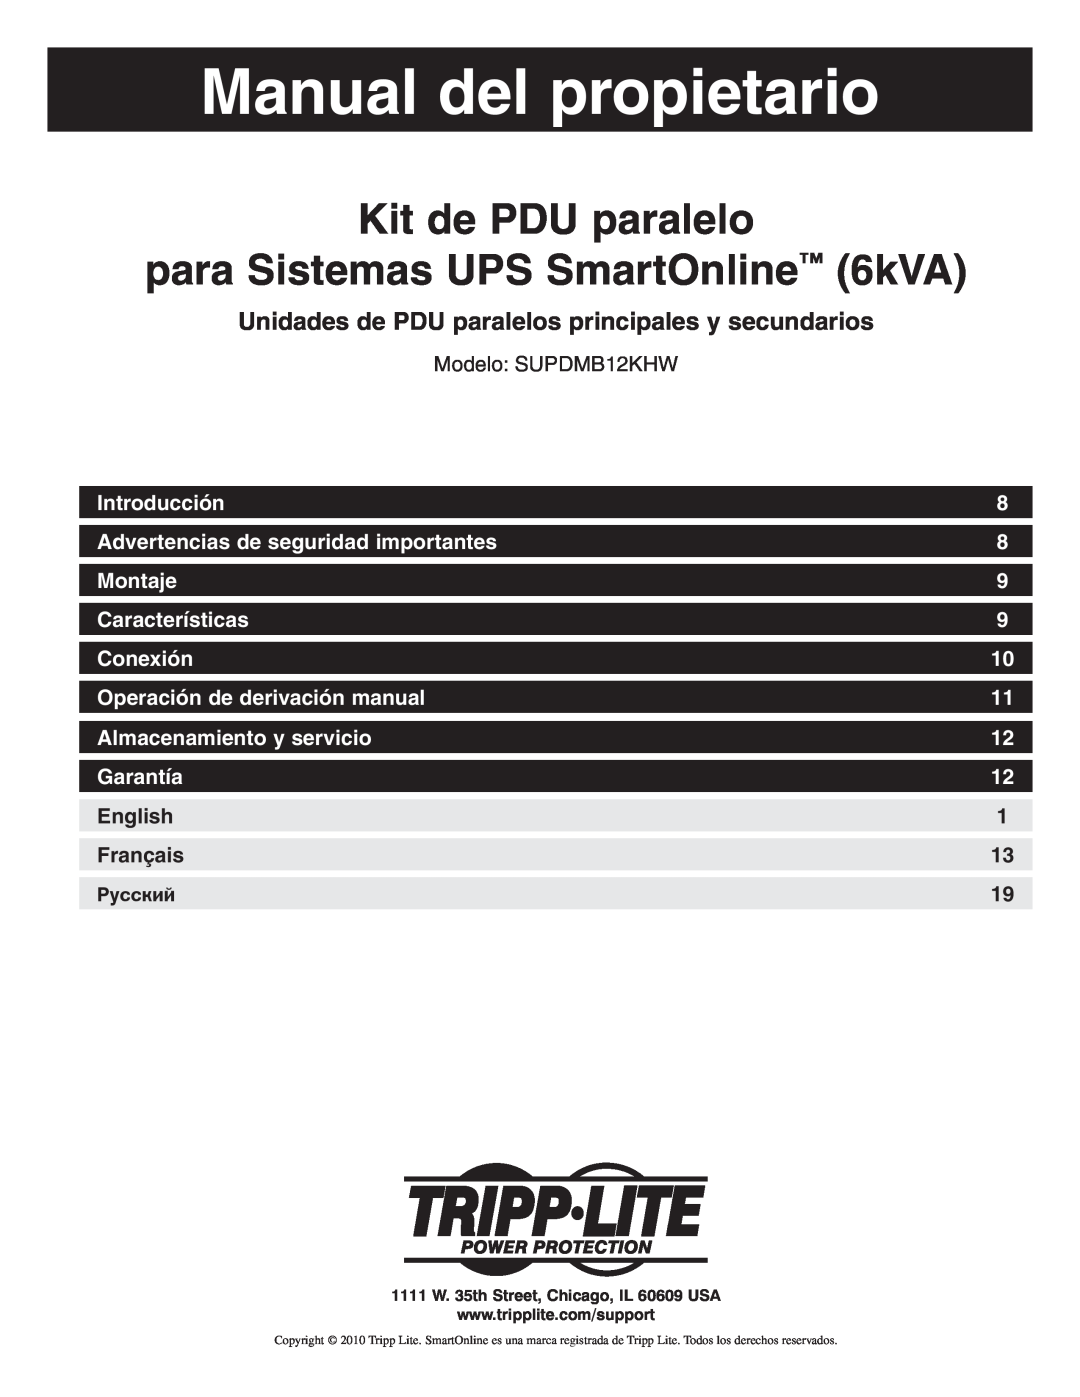 Tripp Lite SUPDMB12KHW owner manual Manual del propietario, Kit de PDU paralelo para Sistemas UPS SmartOnline 6kVA 